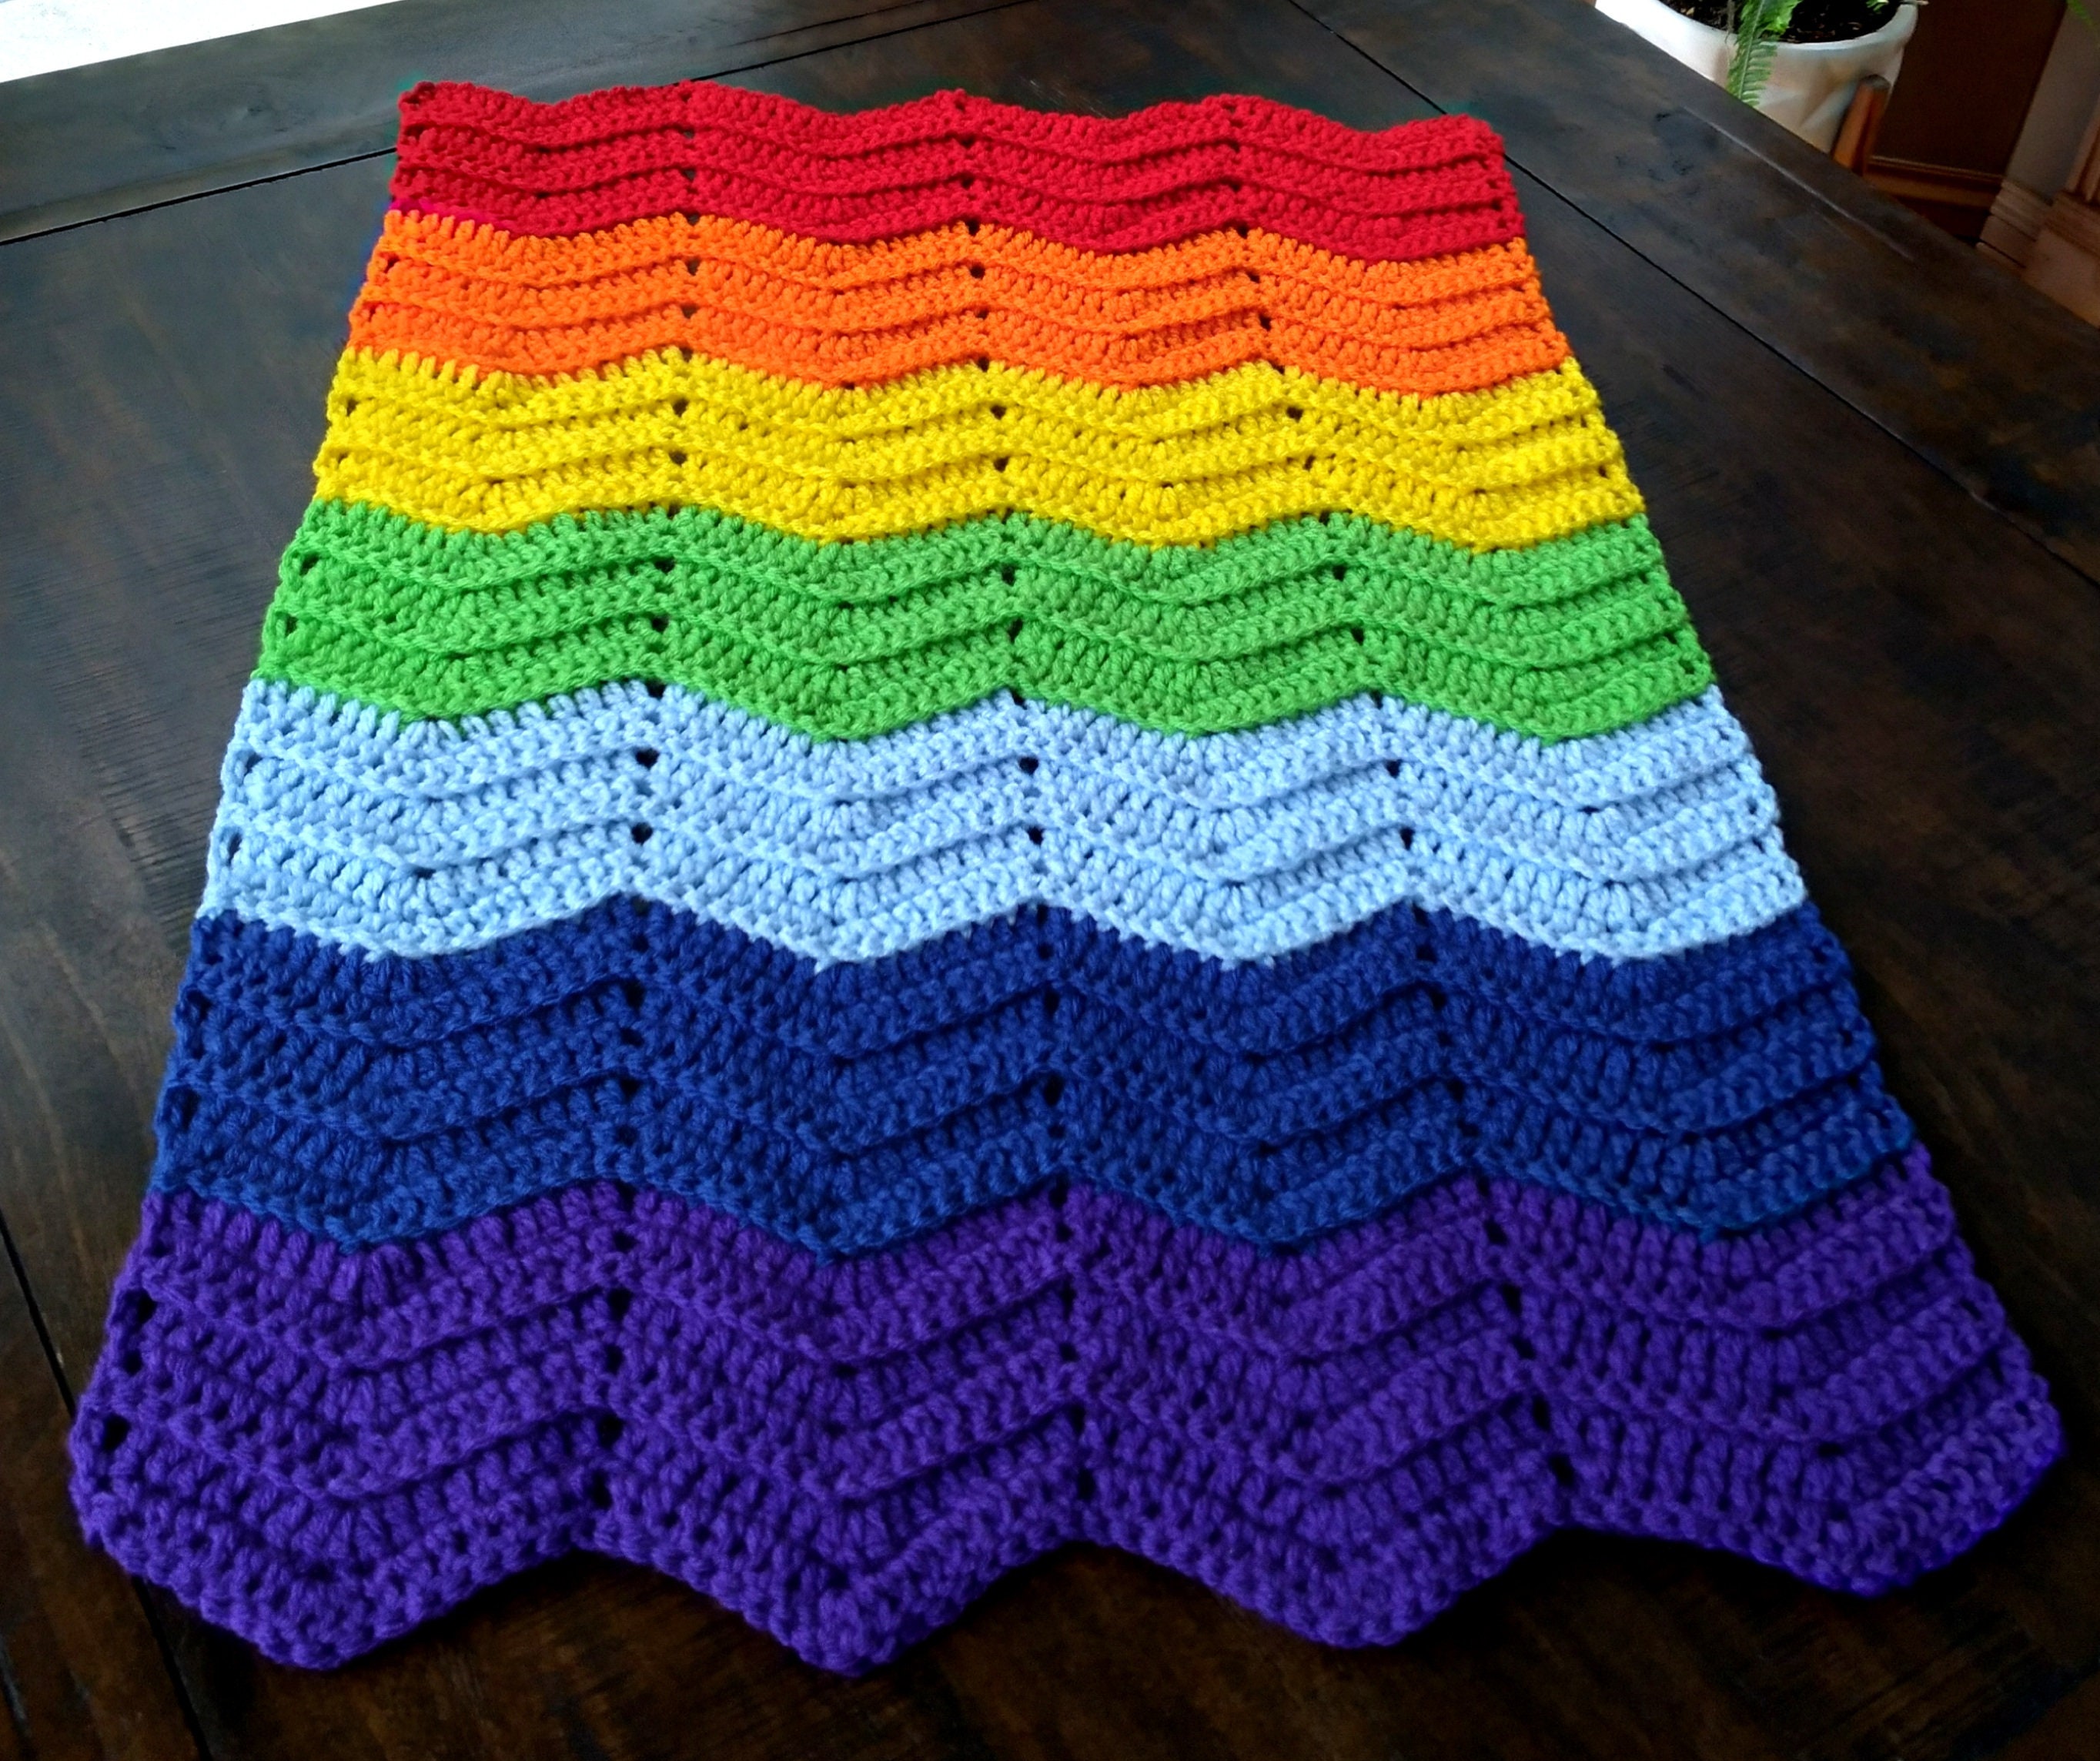 Bernat Blanket yarn, Cool Purple Ombre